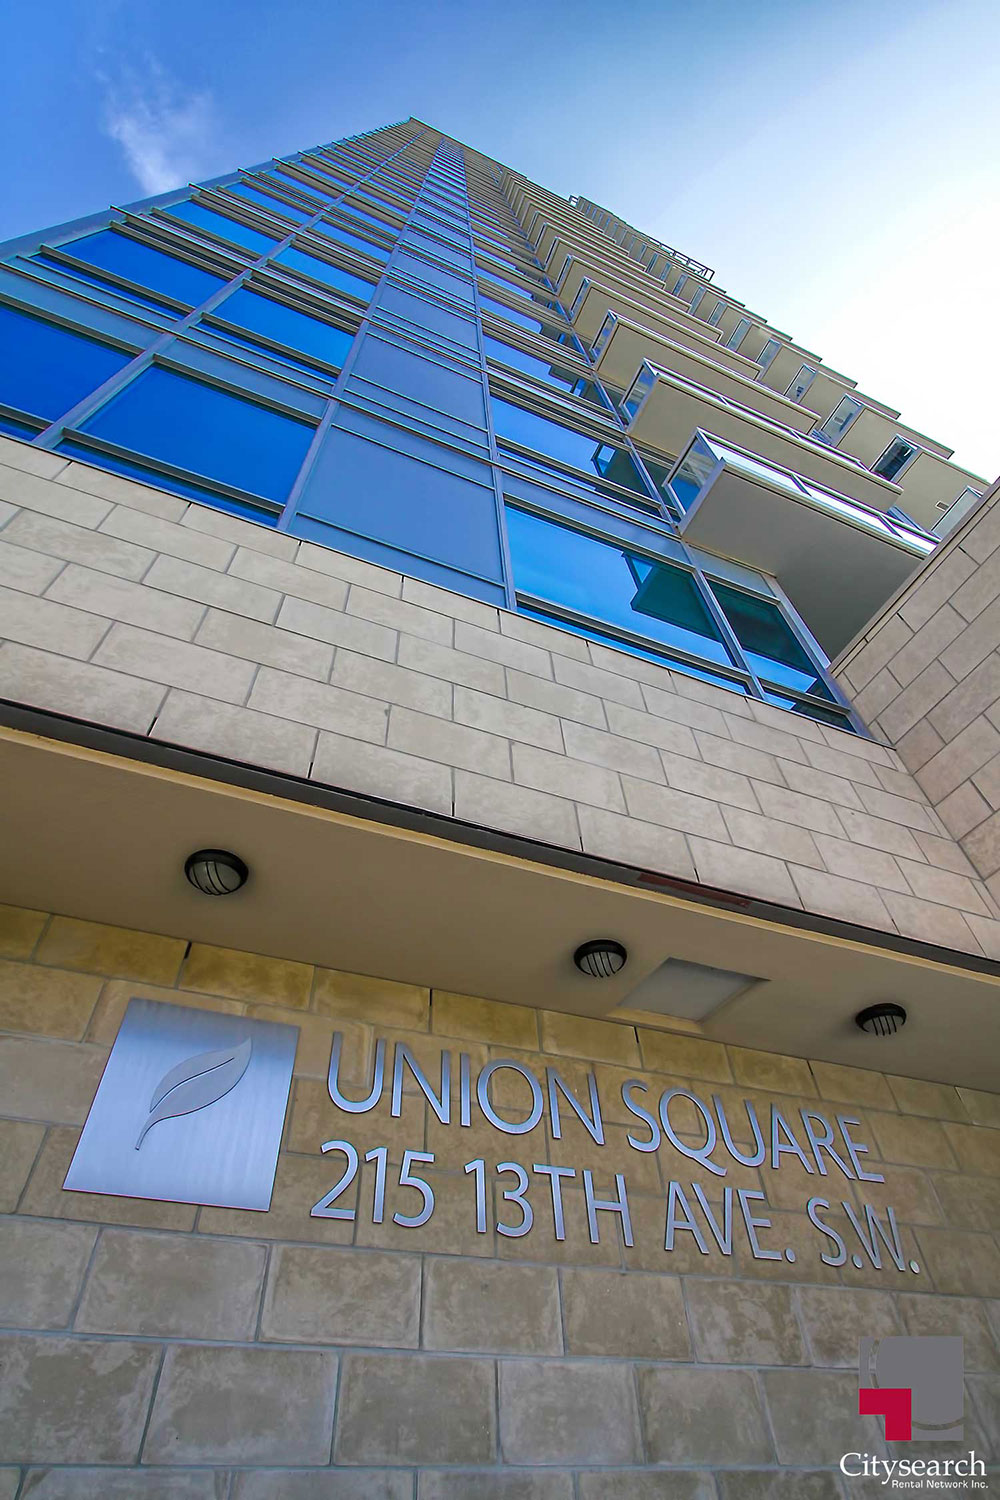 Union Square 15